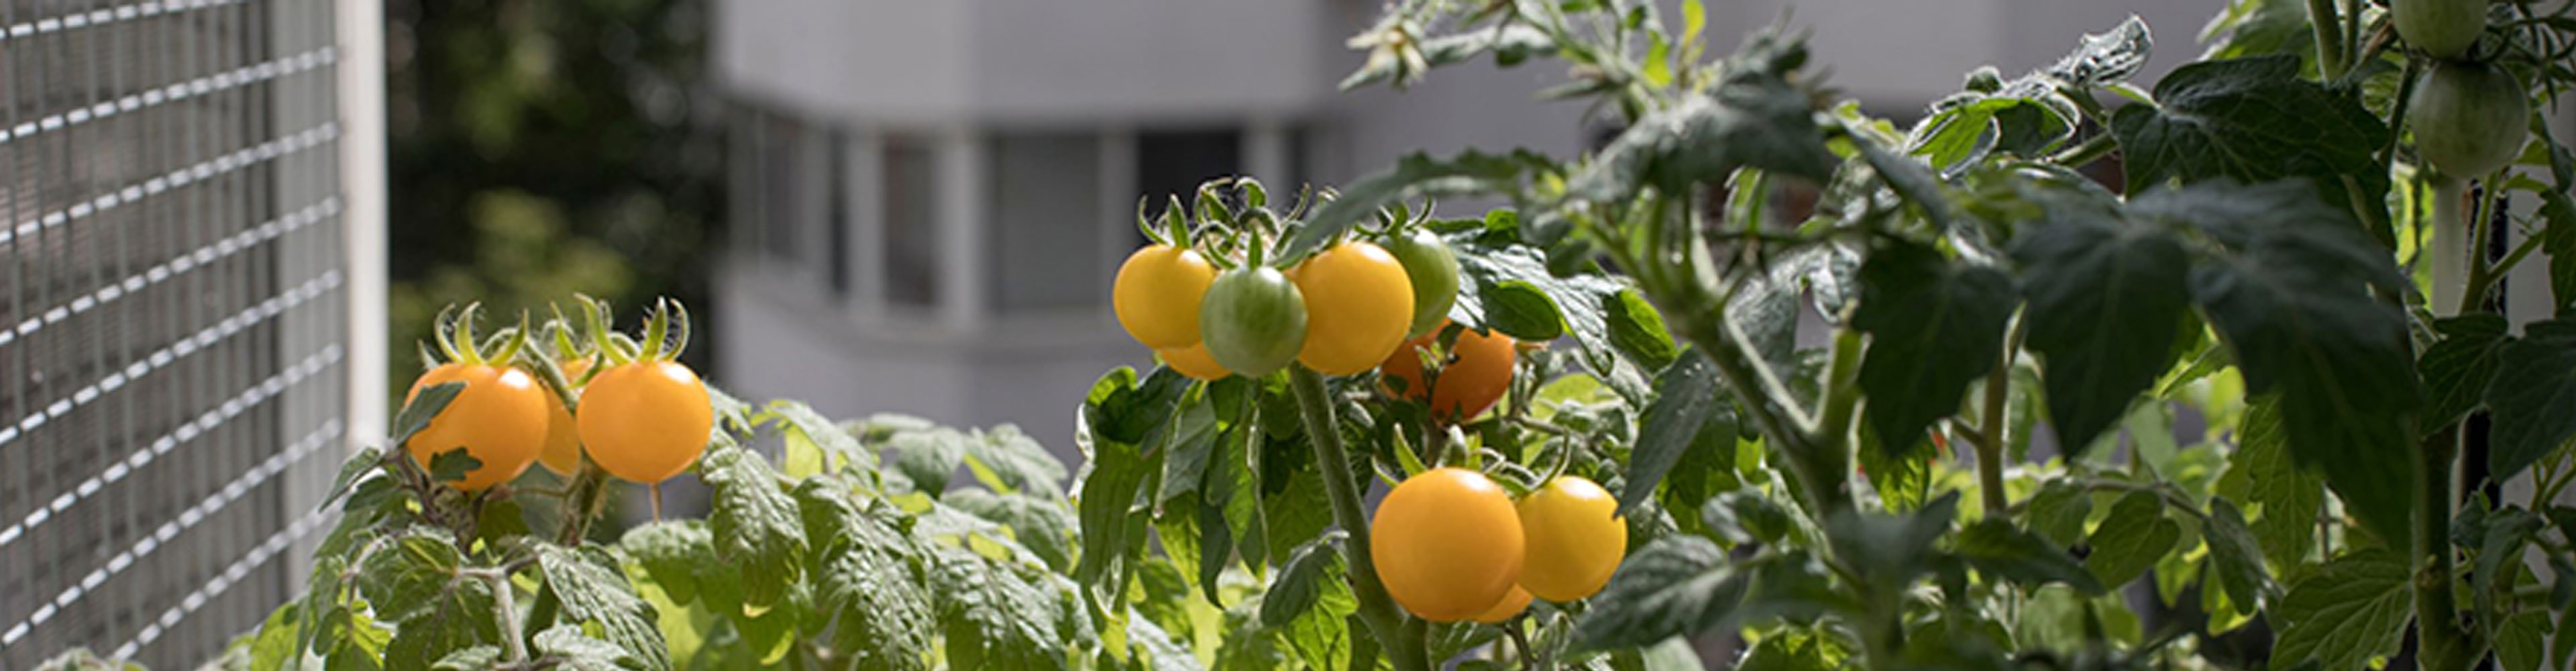 Jardinage urbain : des légumes sur votre balcon